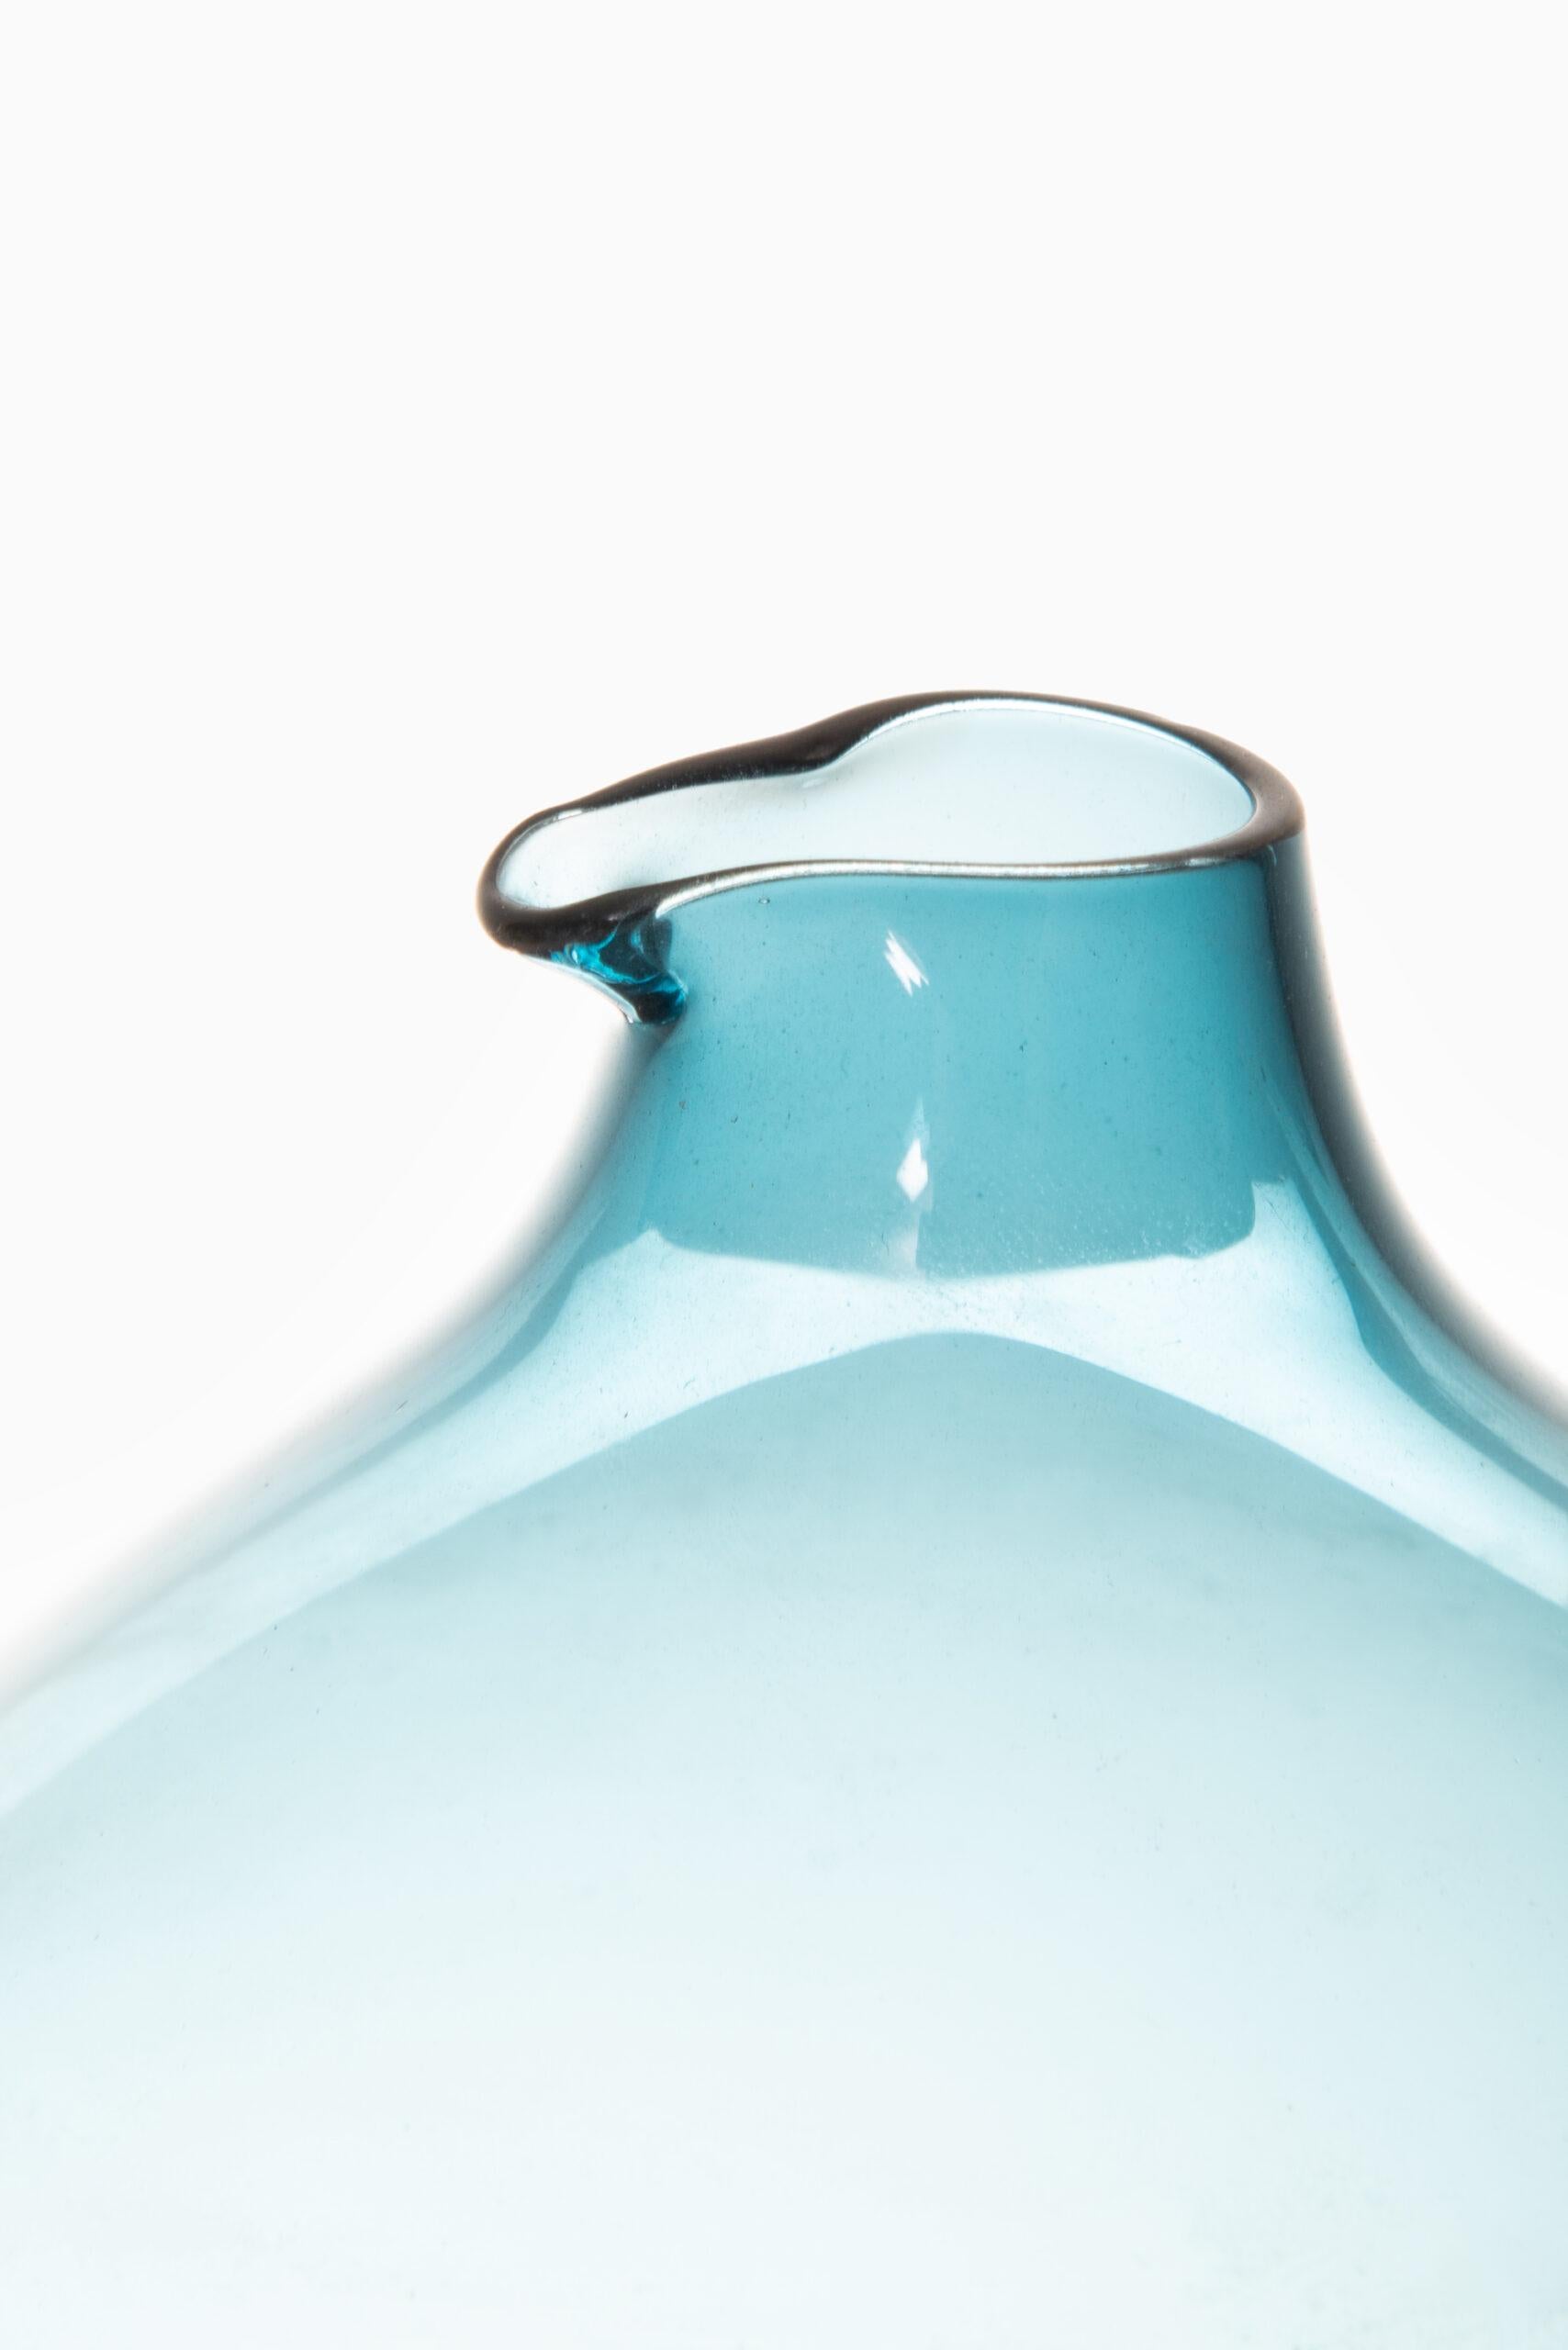 Rare glass vase designed by Kjell Blomberg. Produced by Gullaskruf in Sweden.